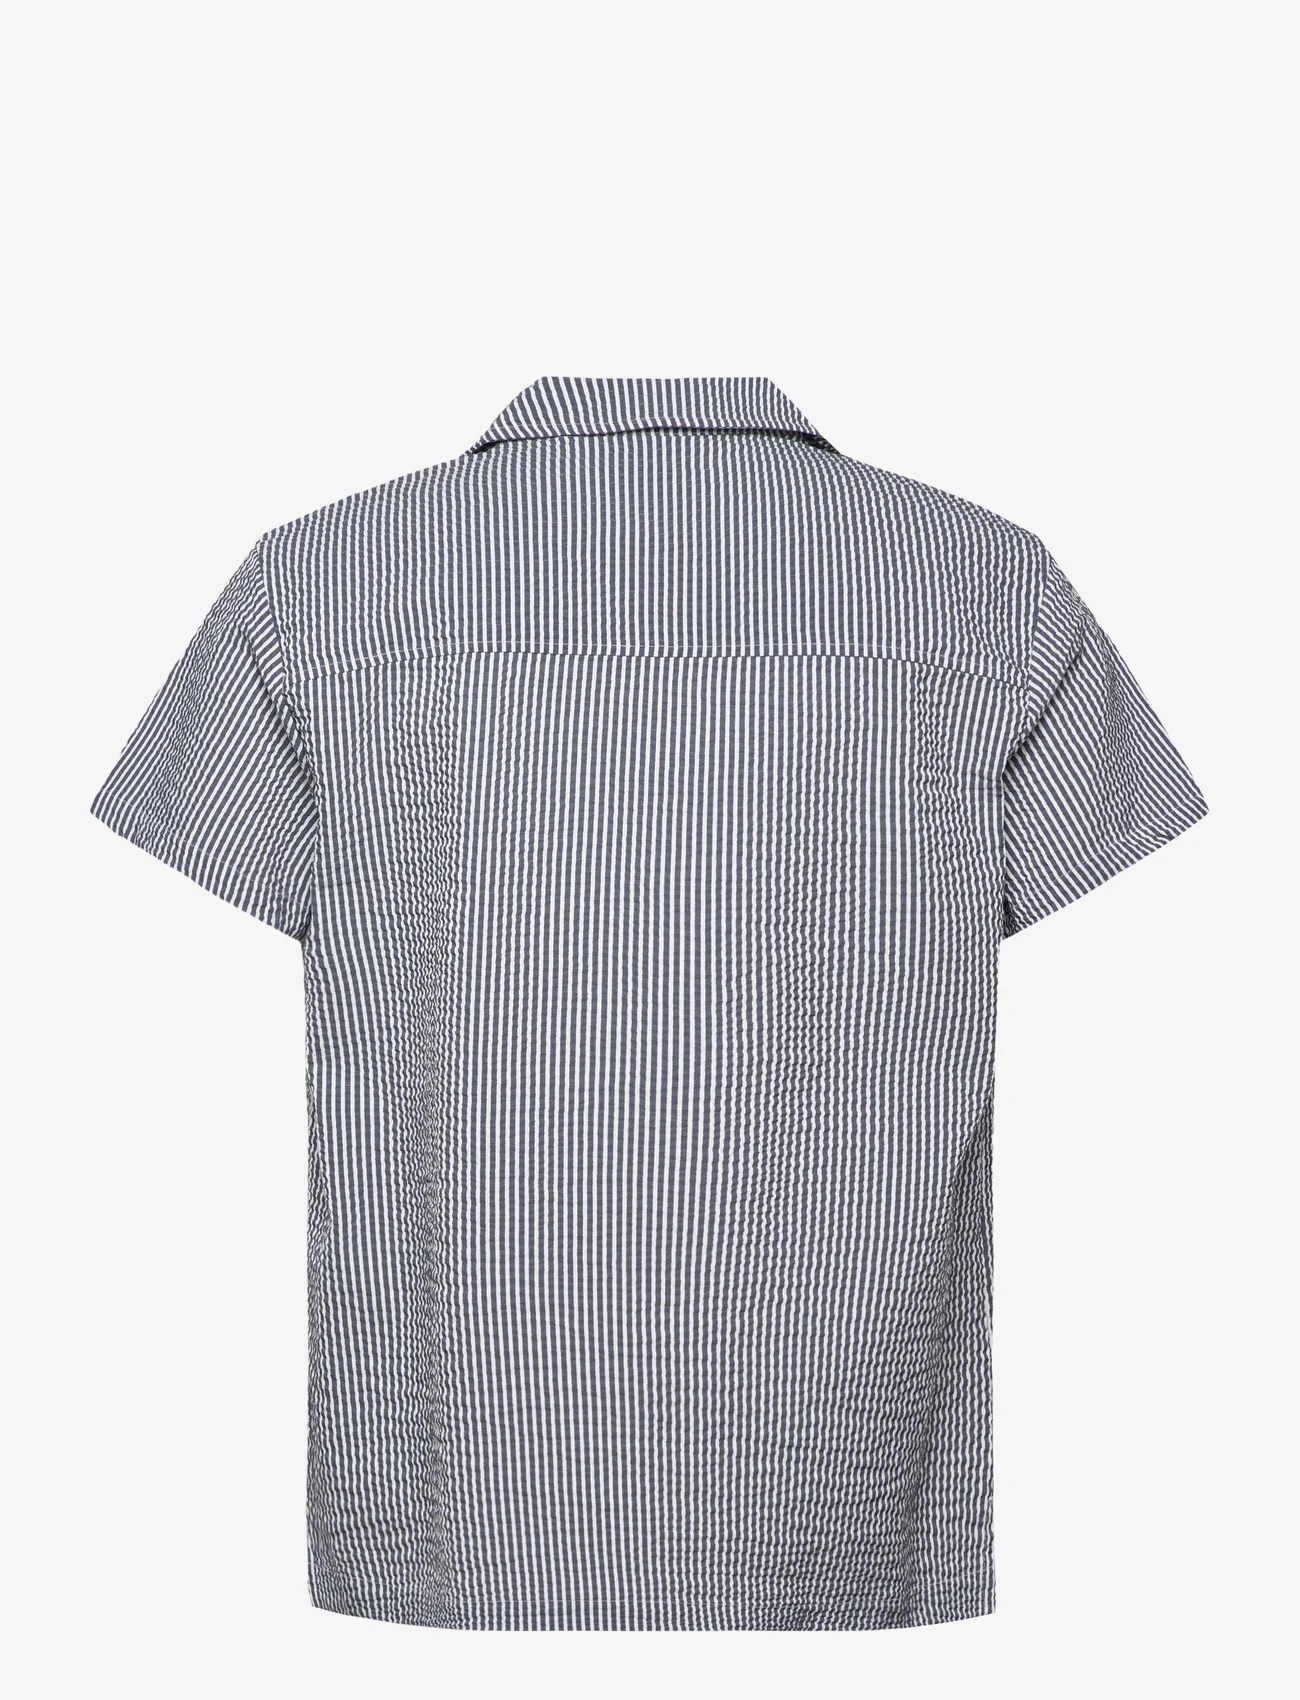 BOSS - Beach Shirt - short-sleeved shirts - navy - 1